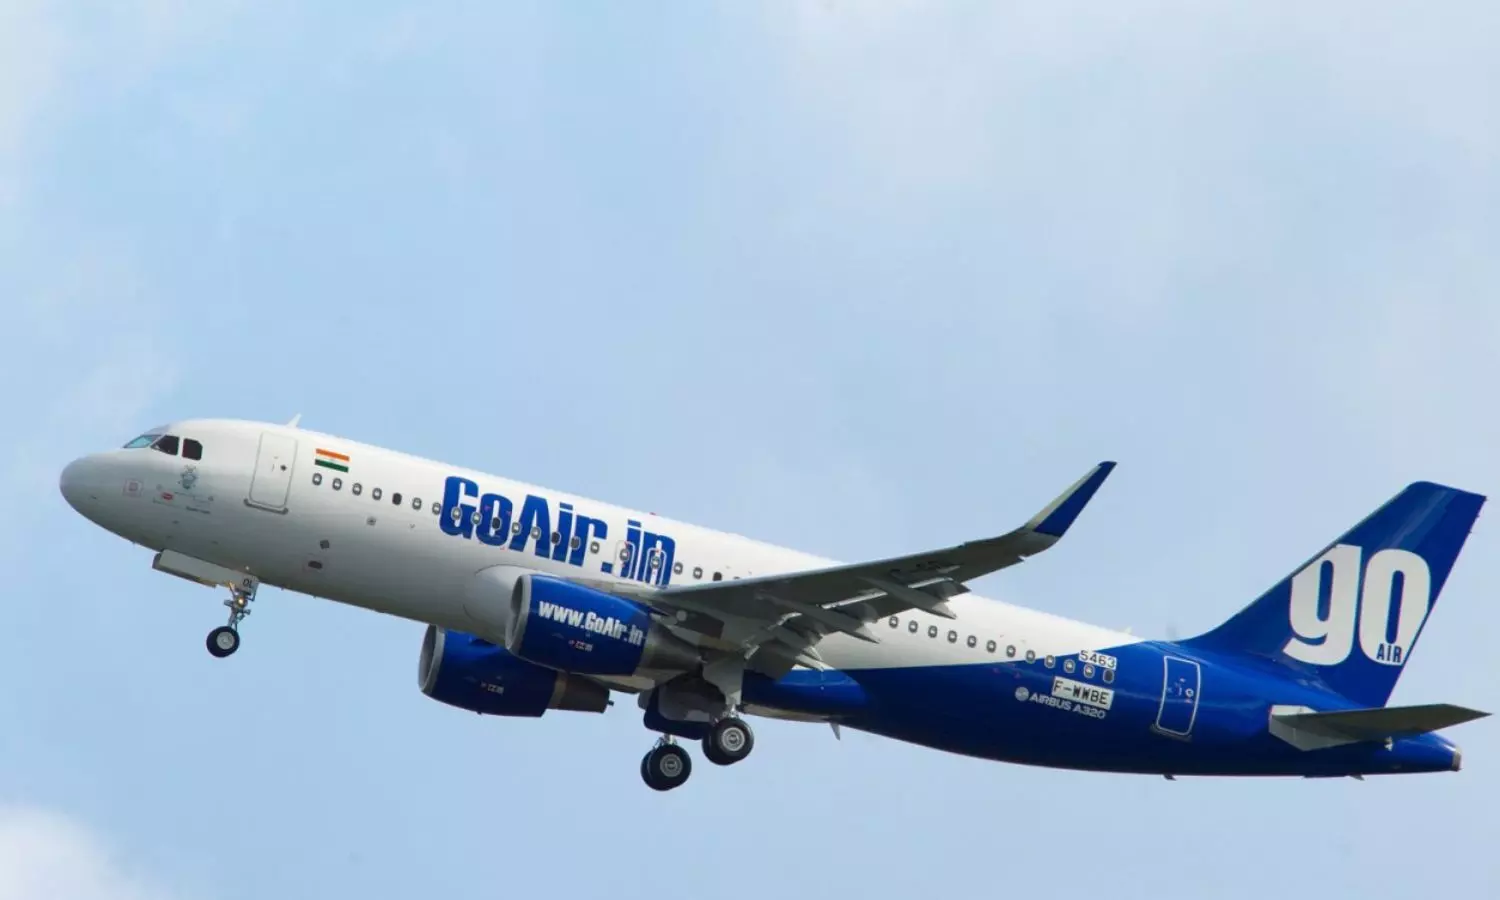 De-register 54 GoAir Planes - Delhi High Court to DGCA